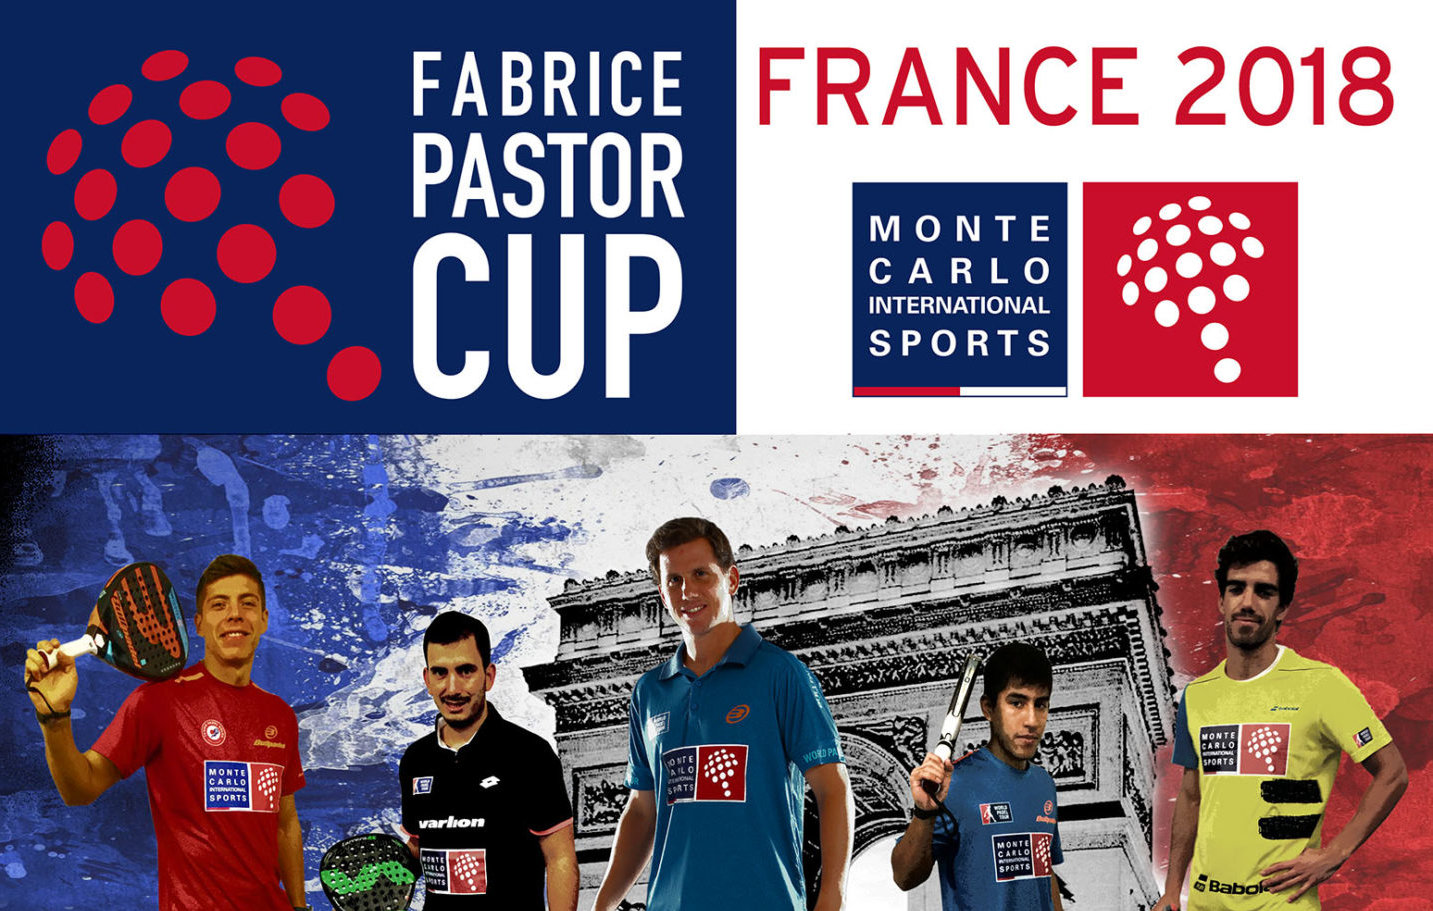 Fabrice Pastor Cupがフランスに到着しました！